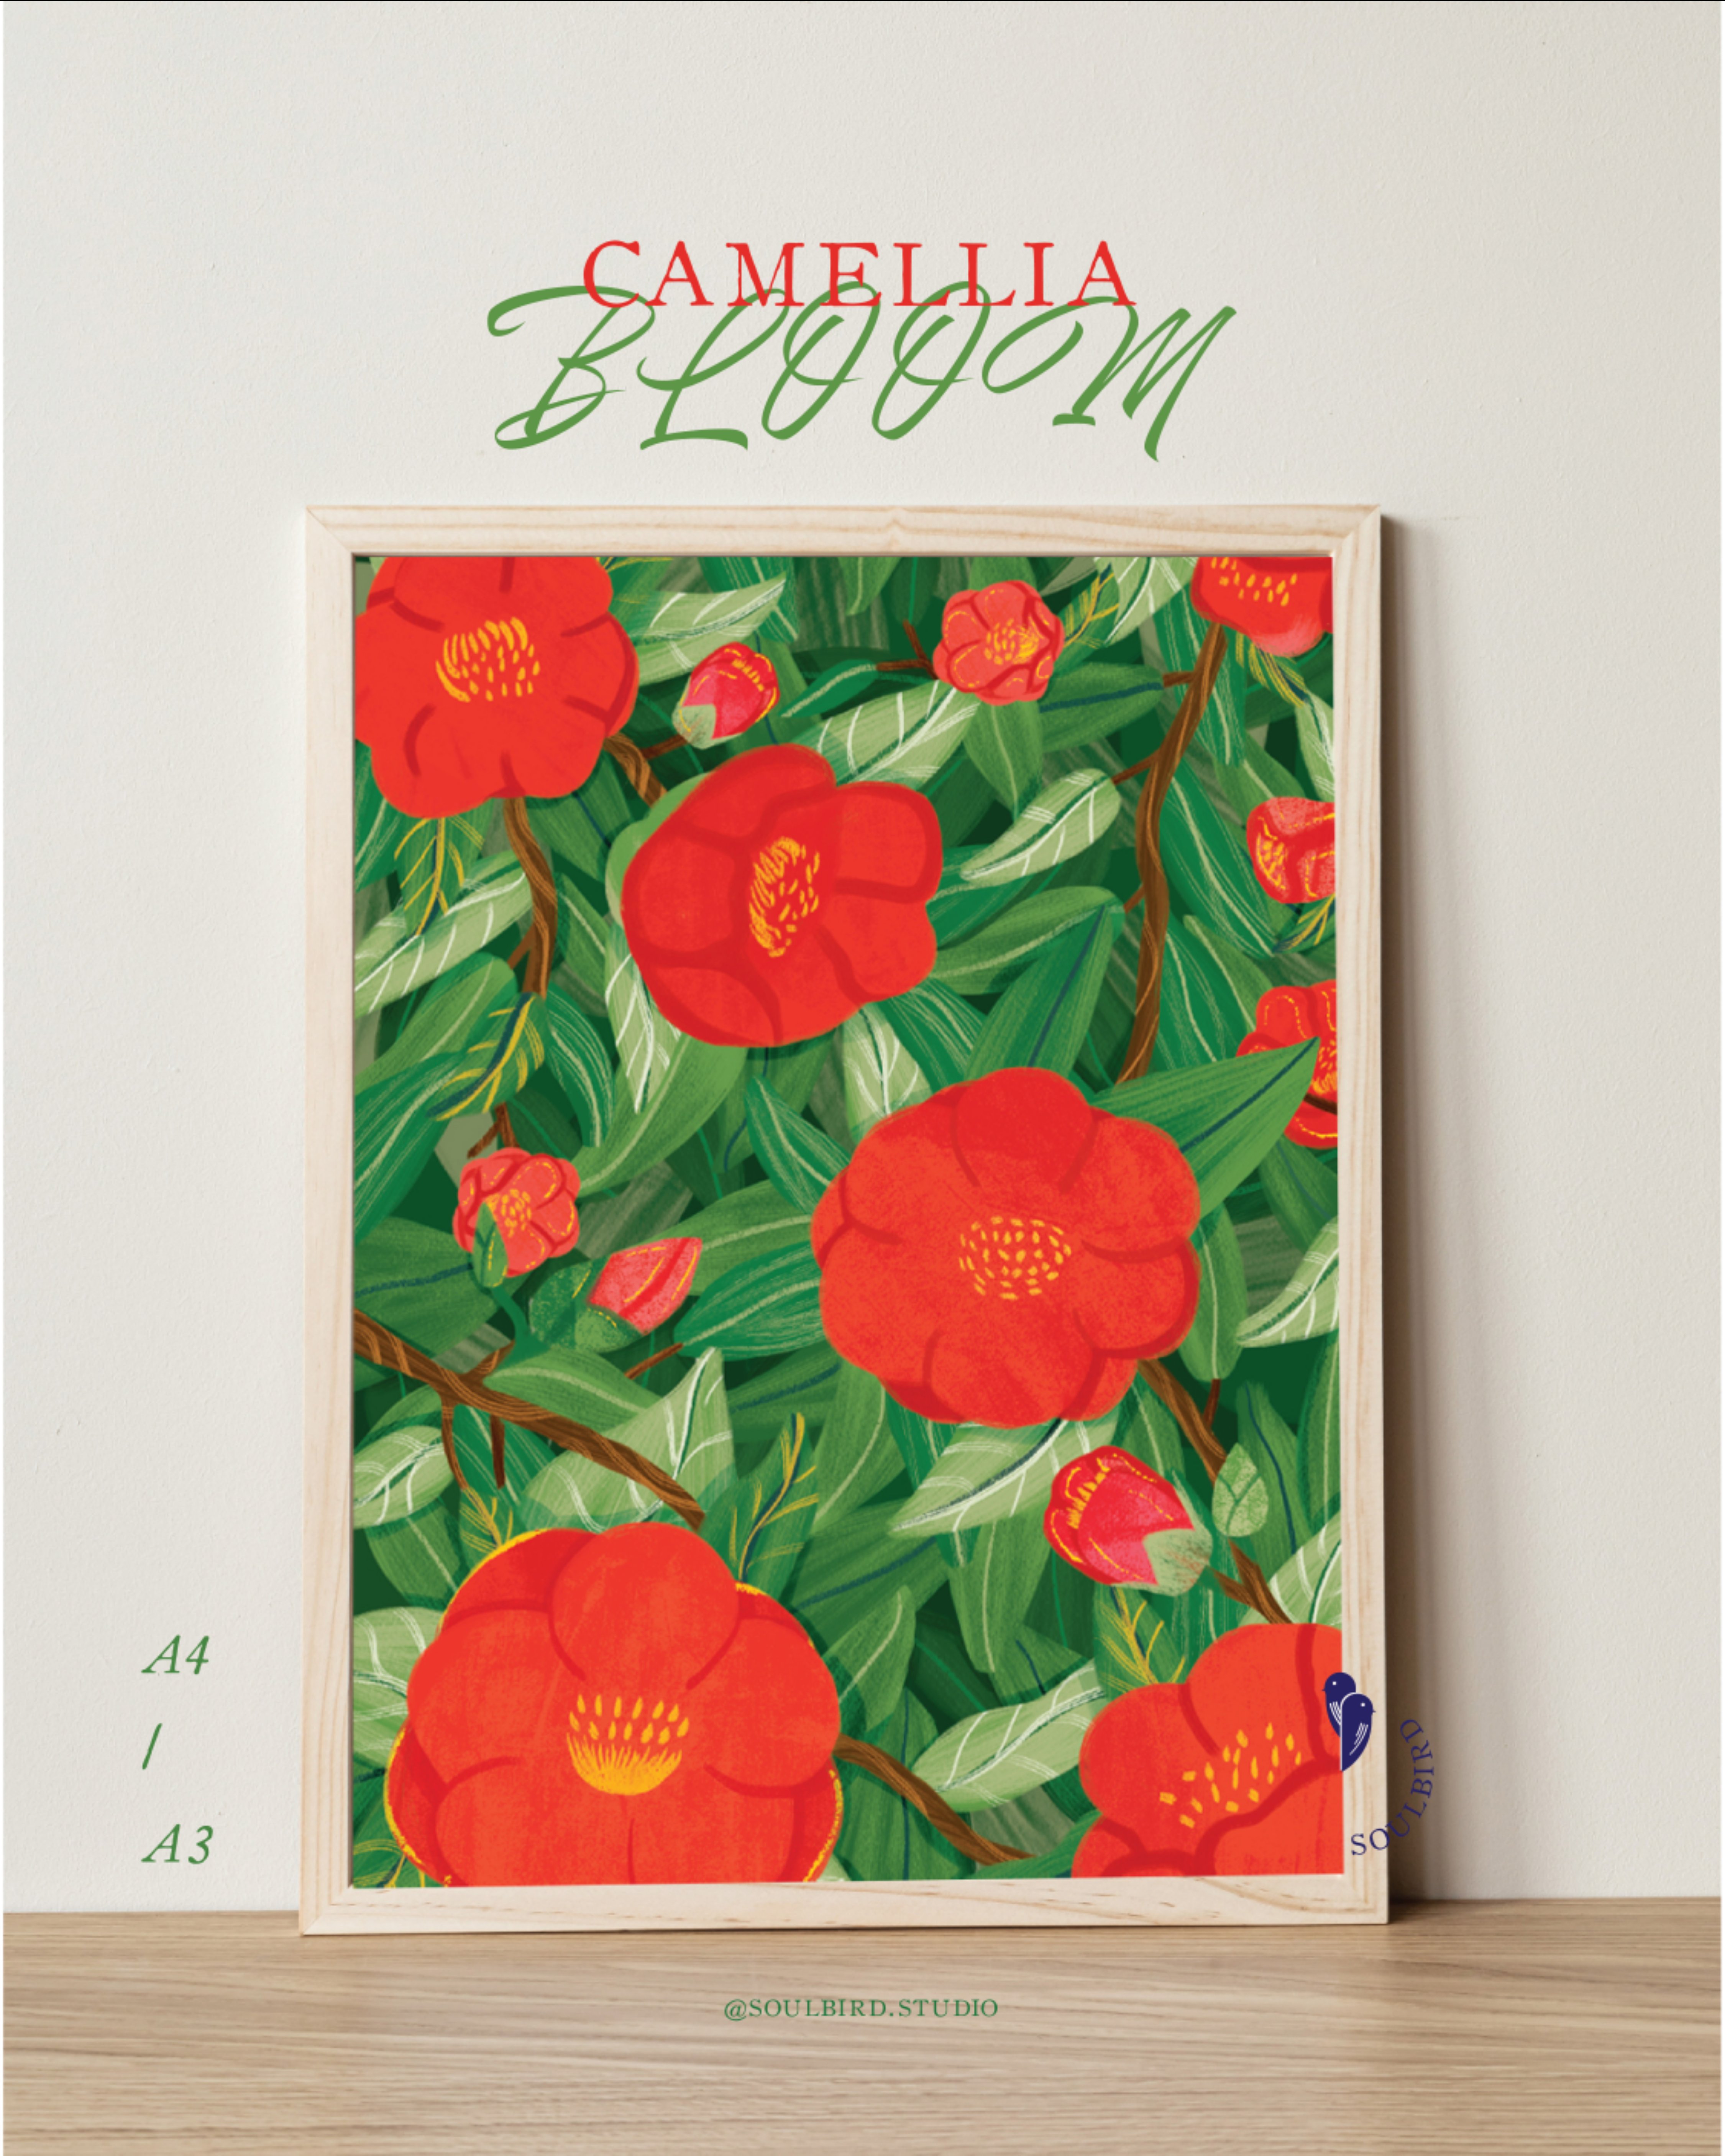 Tranh Soulbird Camellia Blossom A4